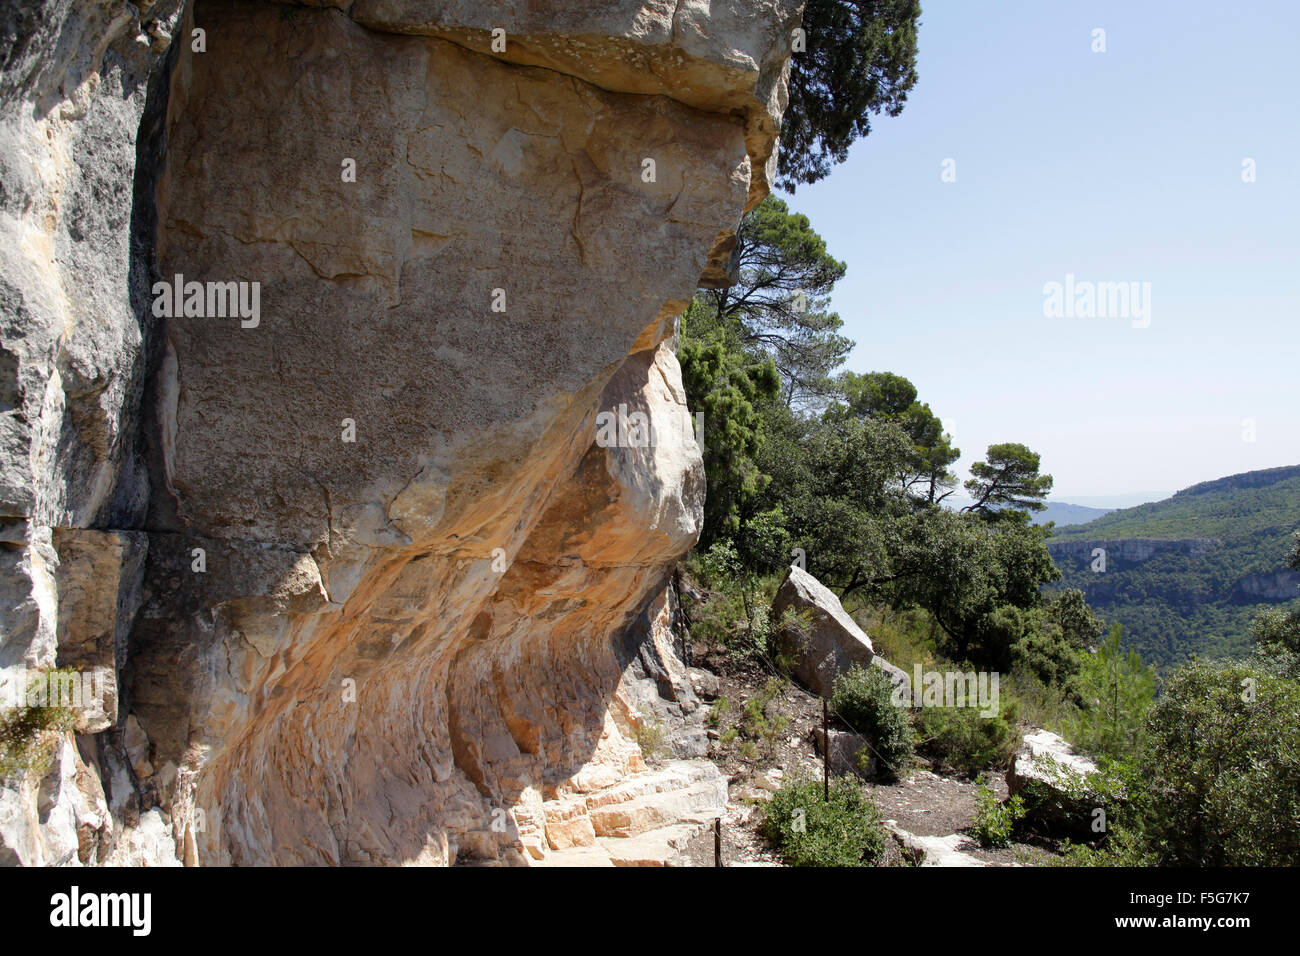 Pinturas rupestres en la cueva Portell de les Lletres, cerca de Montblanc, Tarragona, Cataluña, España. Patrimonio Mundial de la UNESCO sit Foto de stock